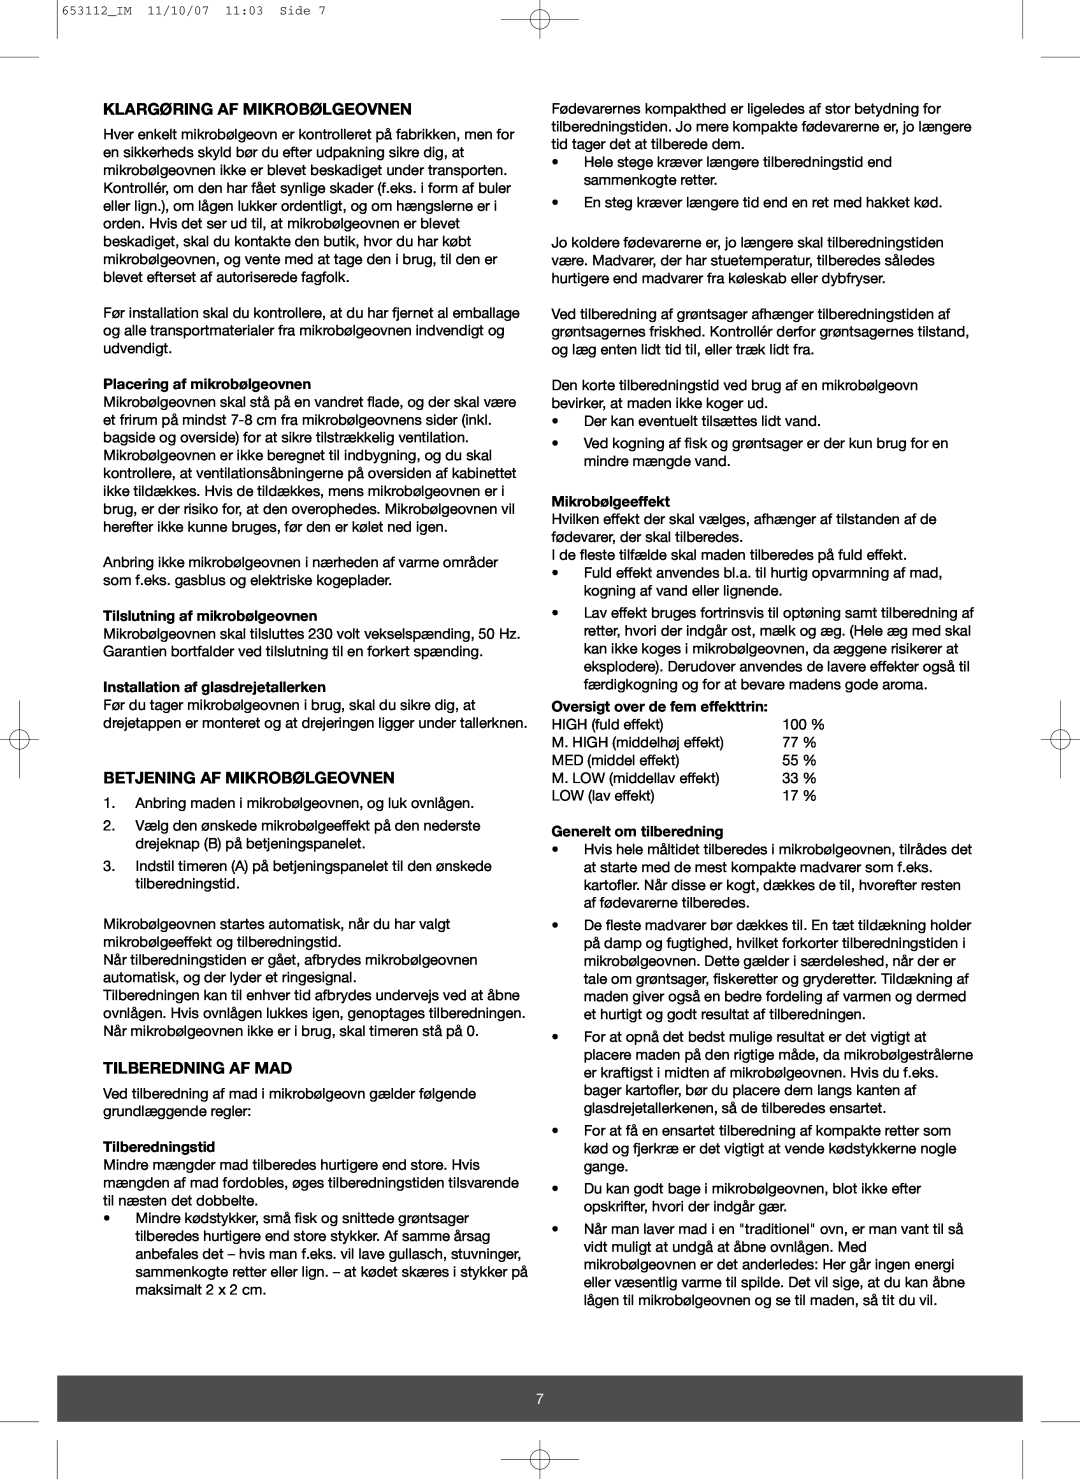 Melissa 653-115 manual Klargøring Af Mikrobølgeovnen, Betjening Af Mikrobølgeovnen, Tilberedning Af Mad, Tilberedningstid 